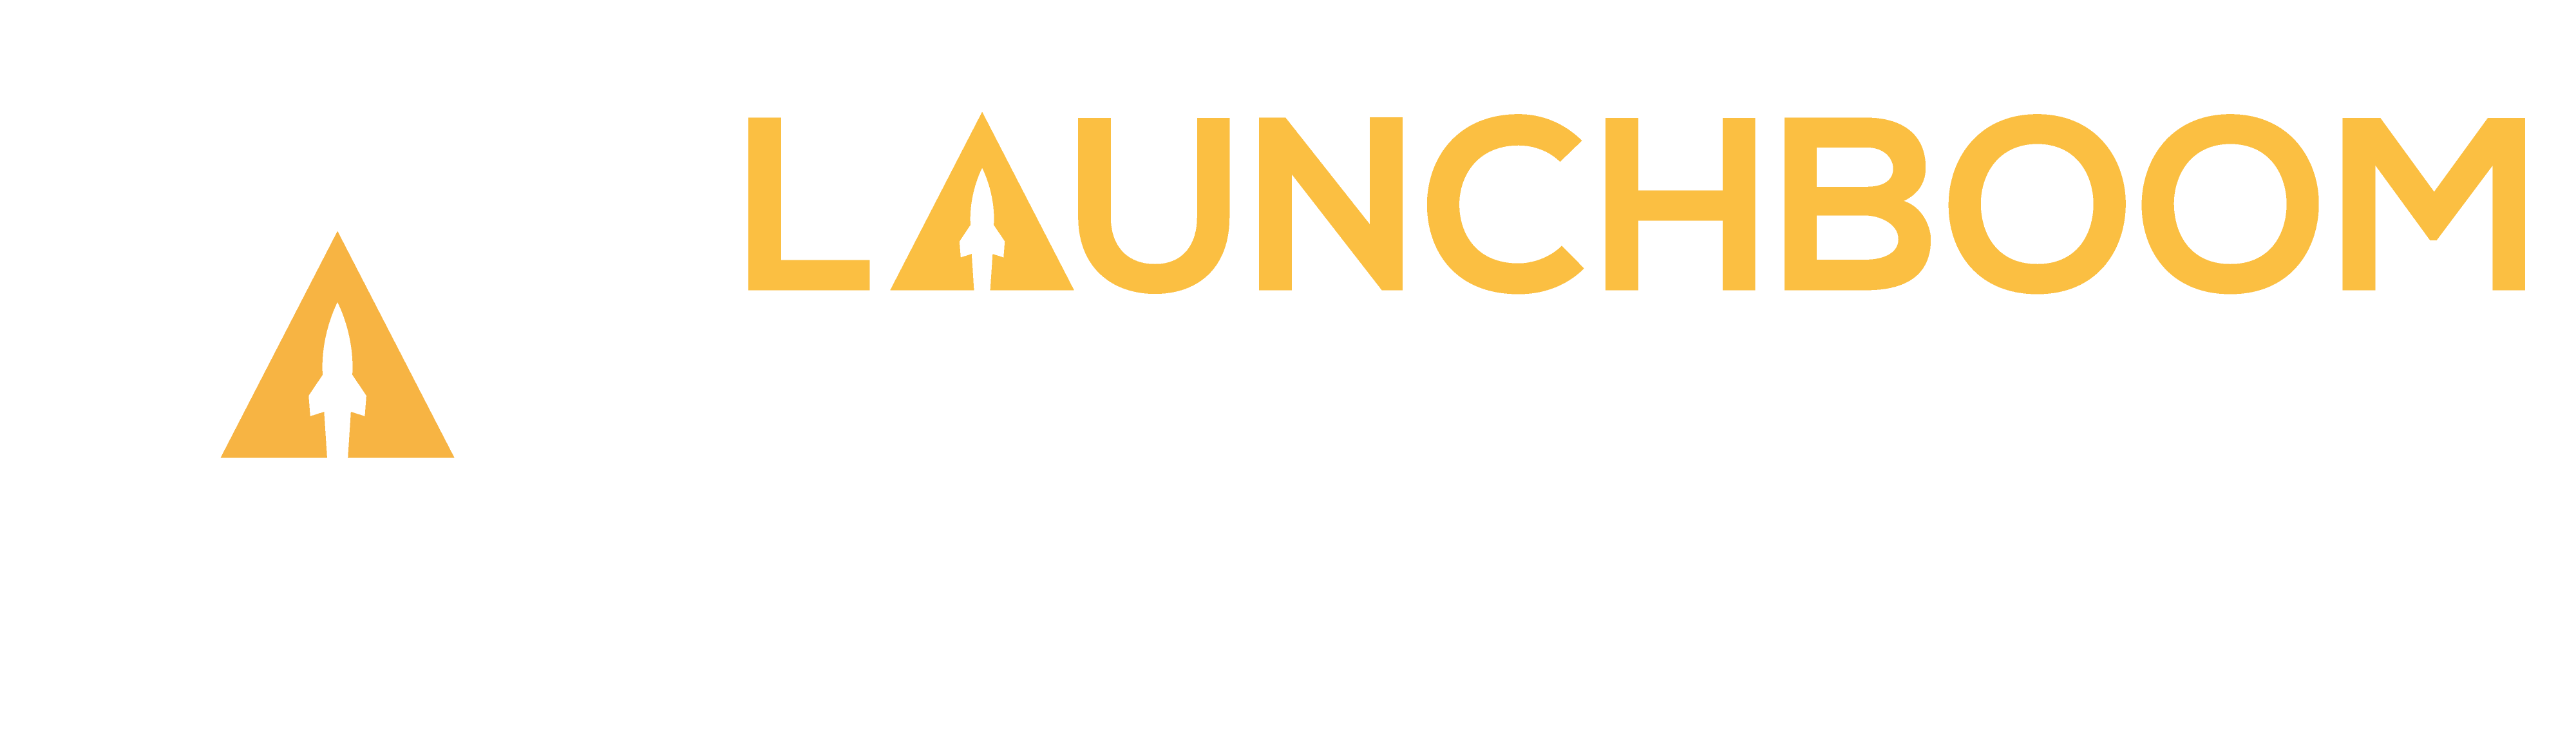 LaunchBoom Academy